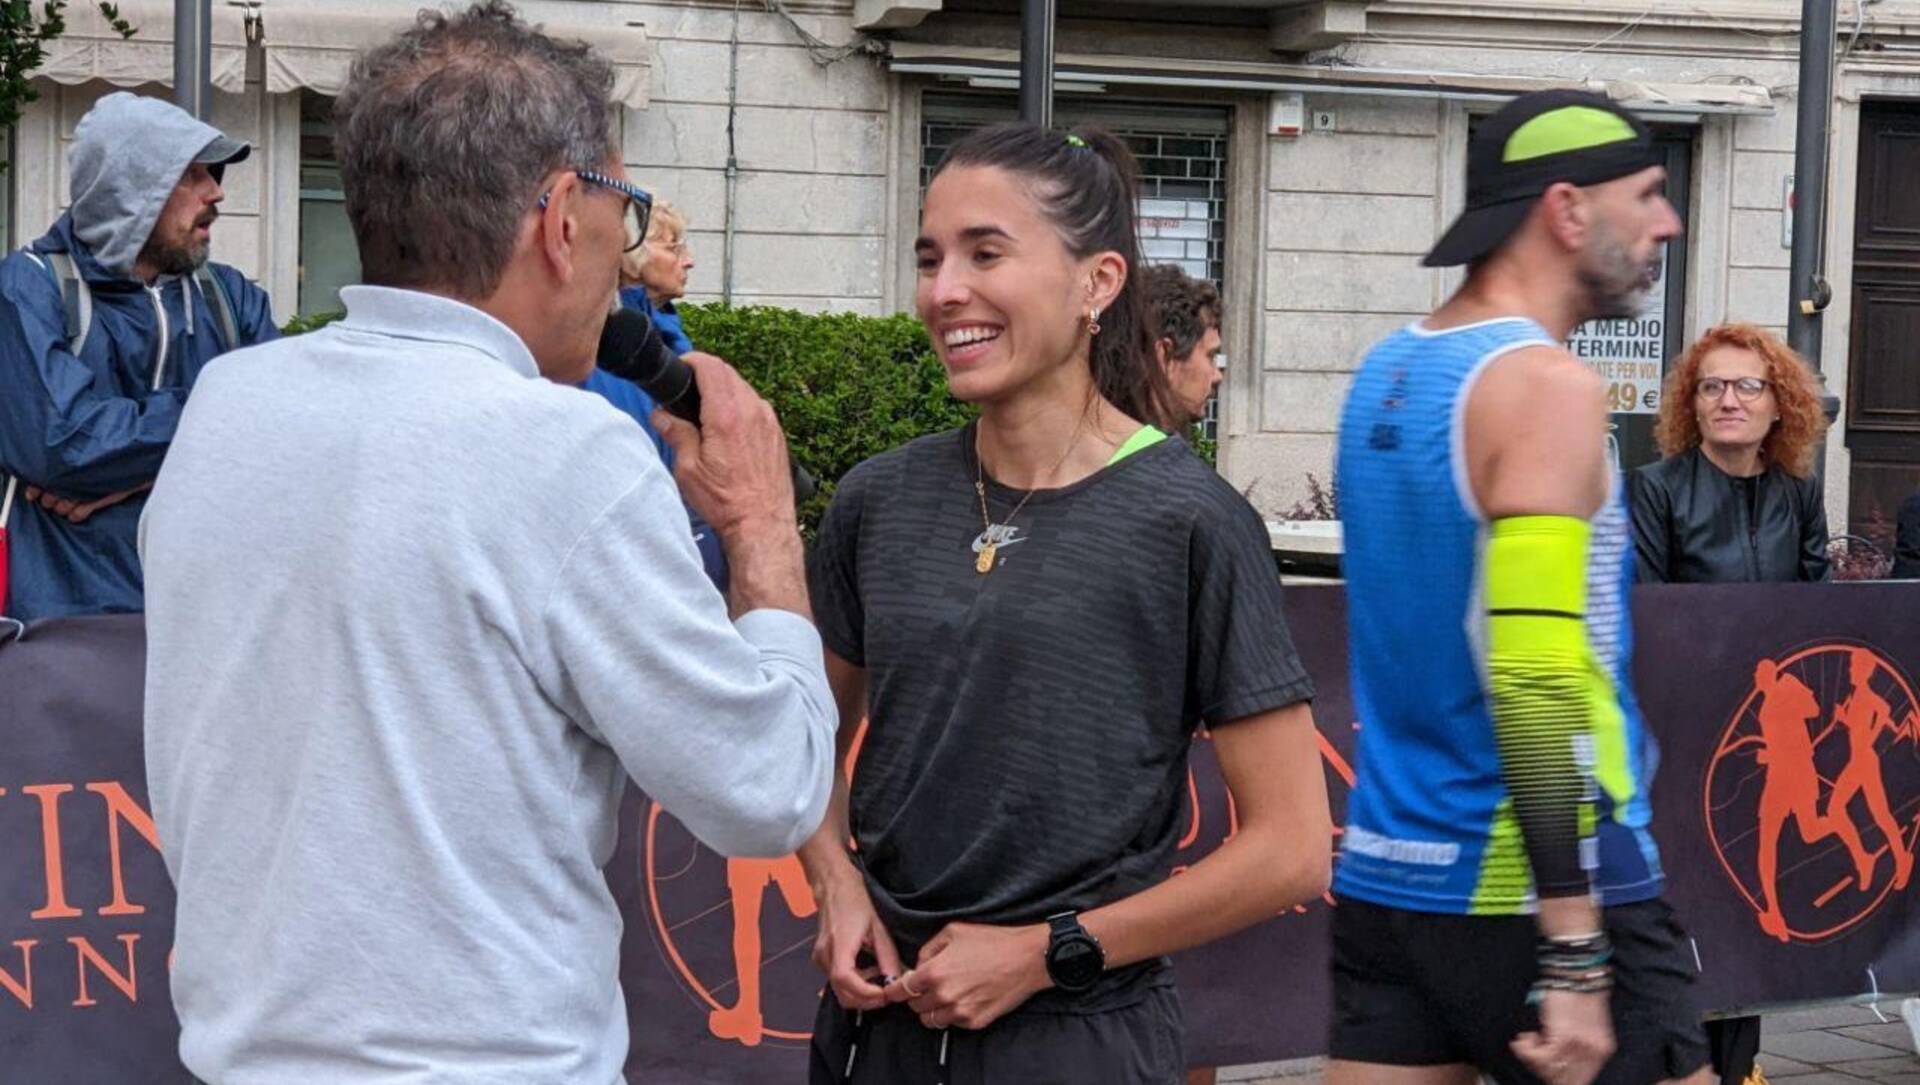 Saronno, la fashion jogger Lisa Migliorini al Running day… l’avete vista e taggata?